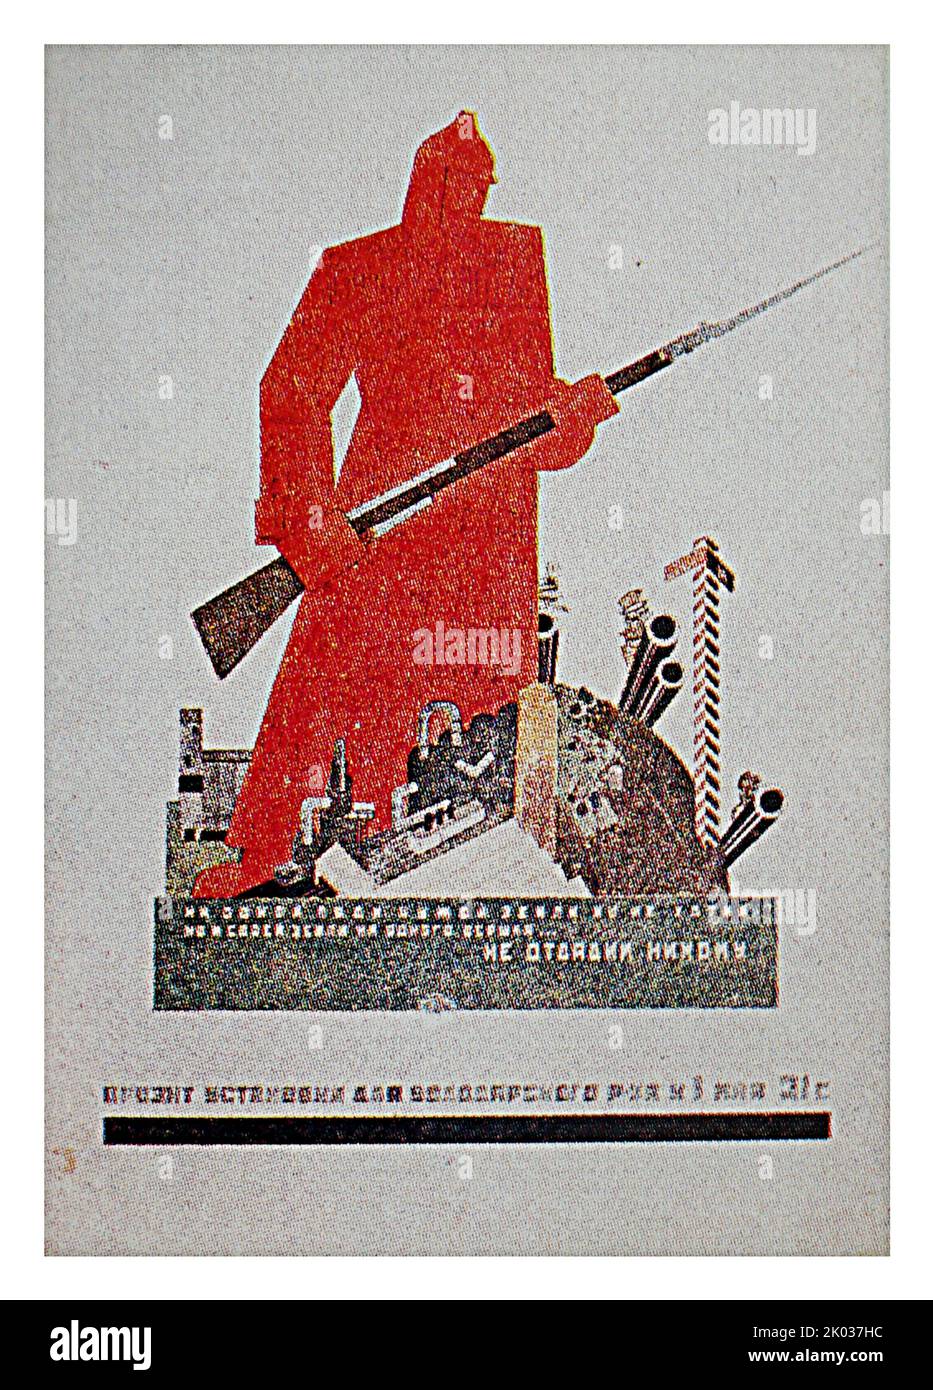 Brigada de la asociación creativa ISORAM. Diseño de una instalación decorativa para el distrito Volodarsky de Leningrado el 1 de mayo de 1931. Foto de stock